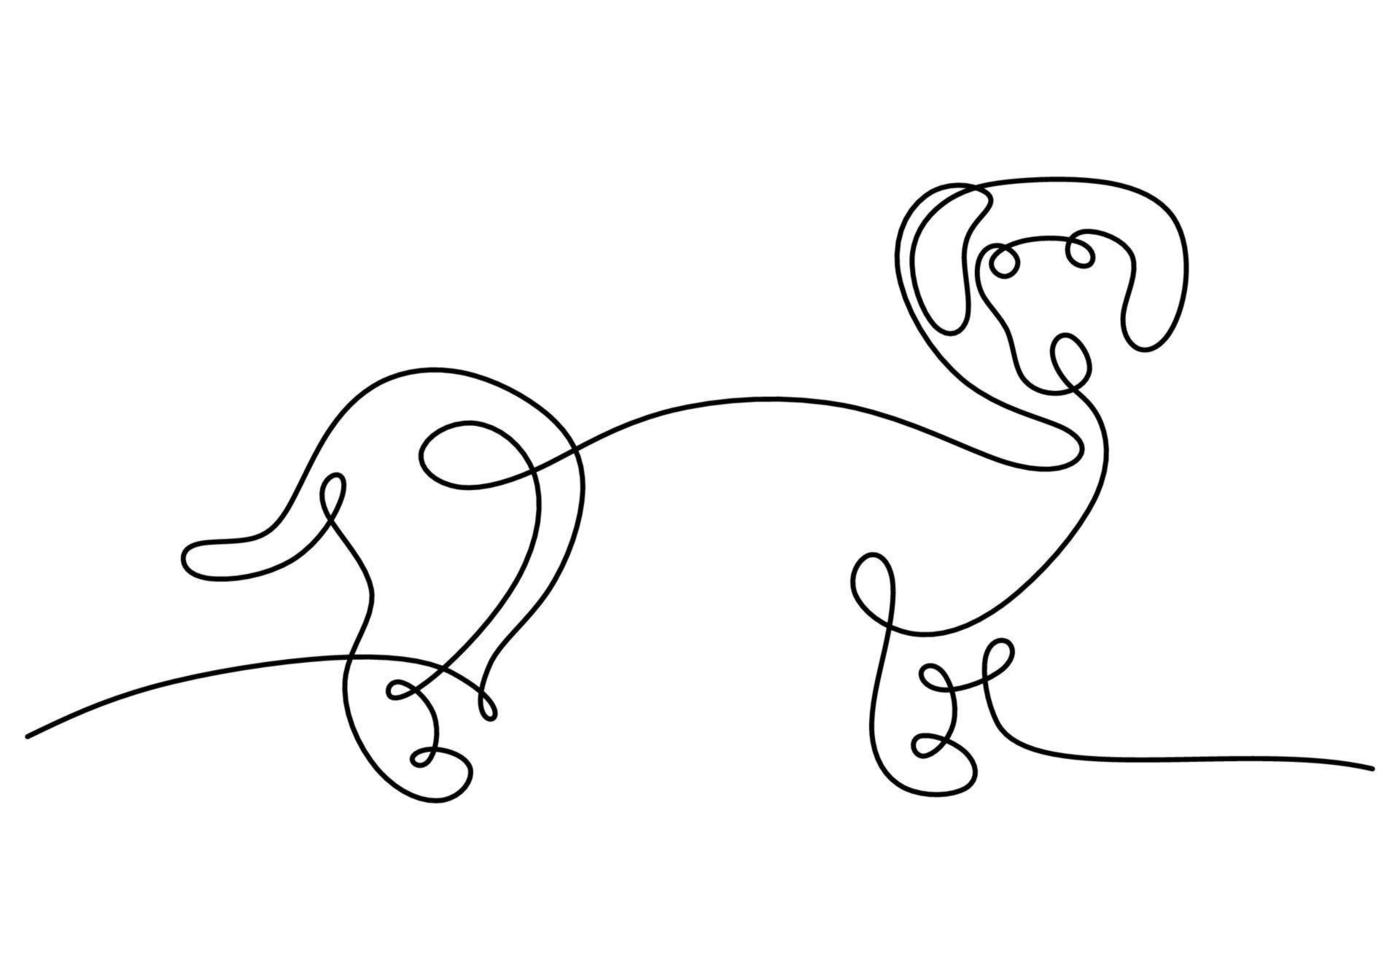 dibujado a mano una sola línea continua de cachorro sobre fondo blanco vector